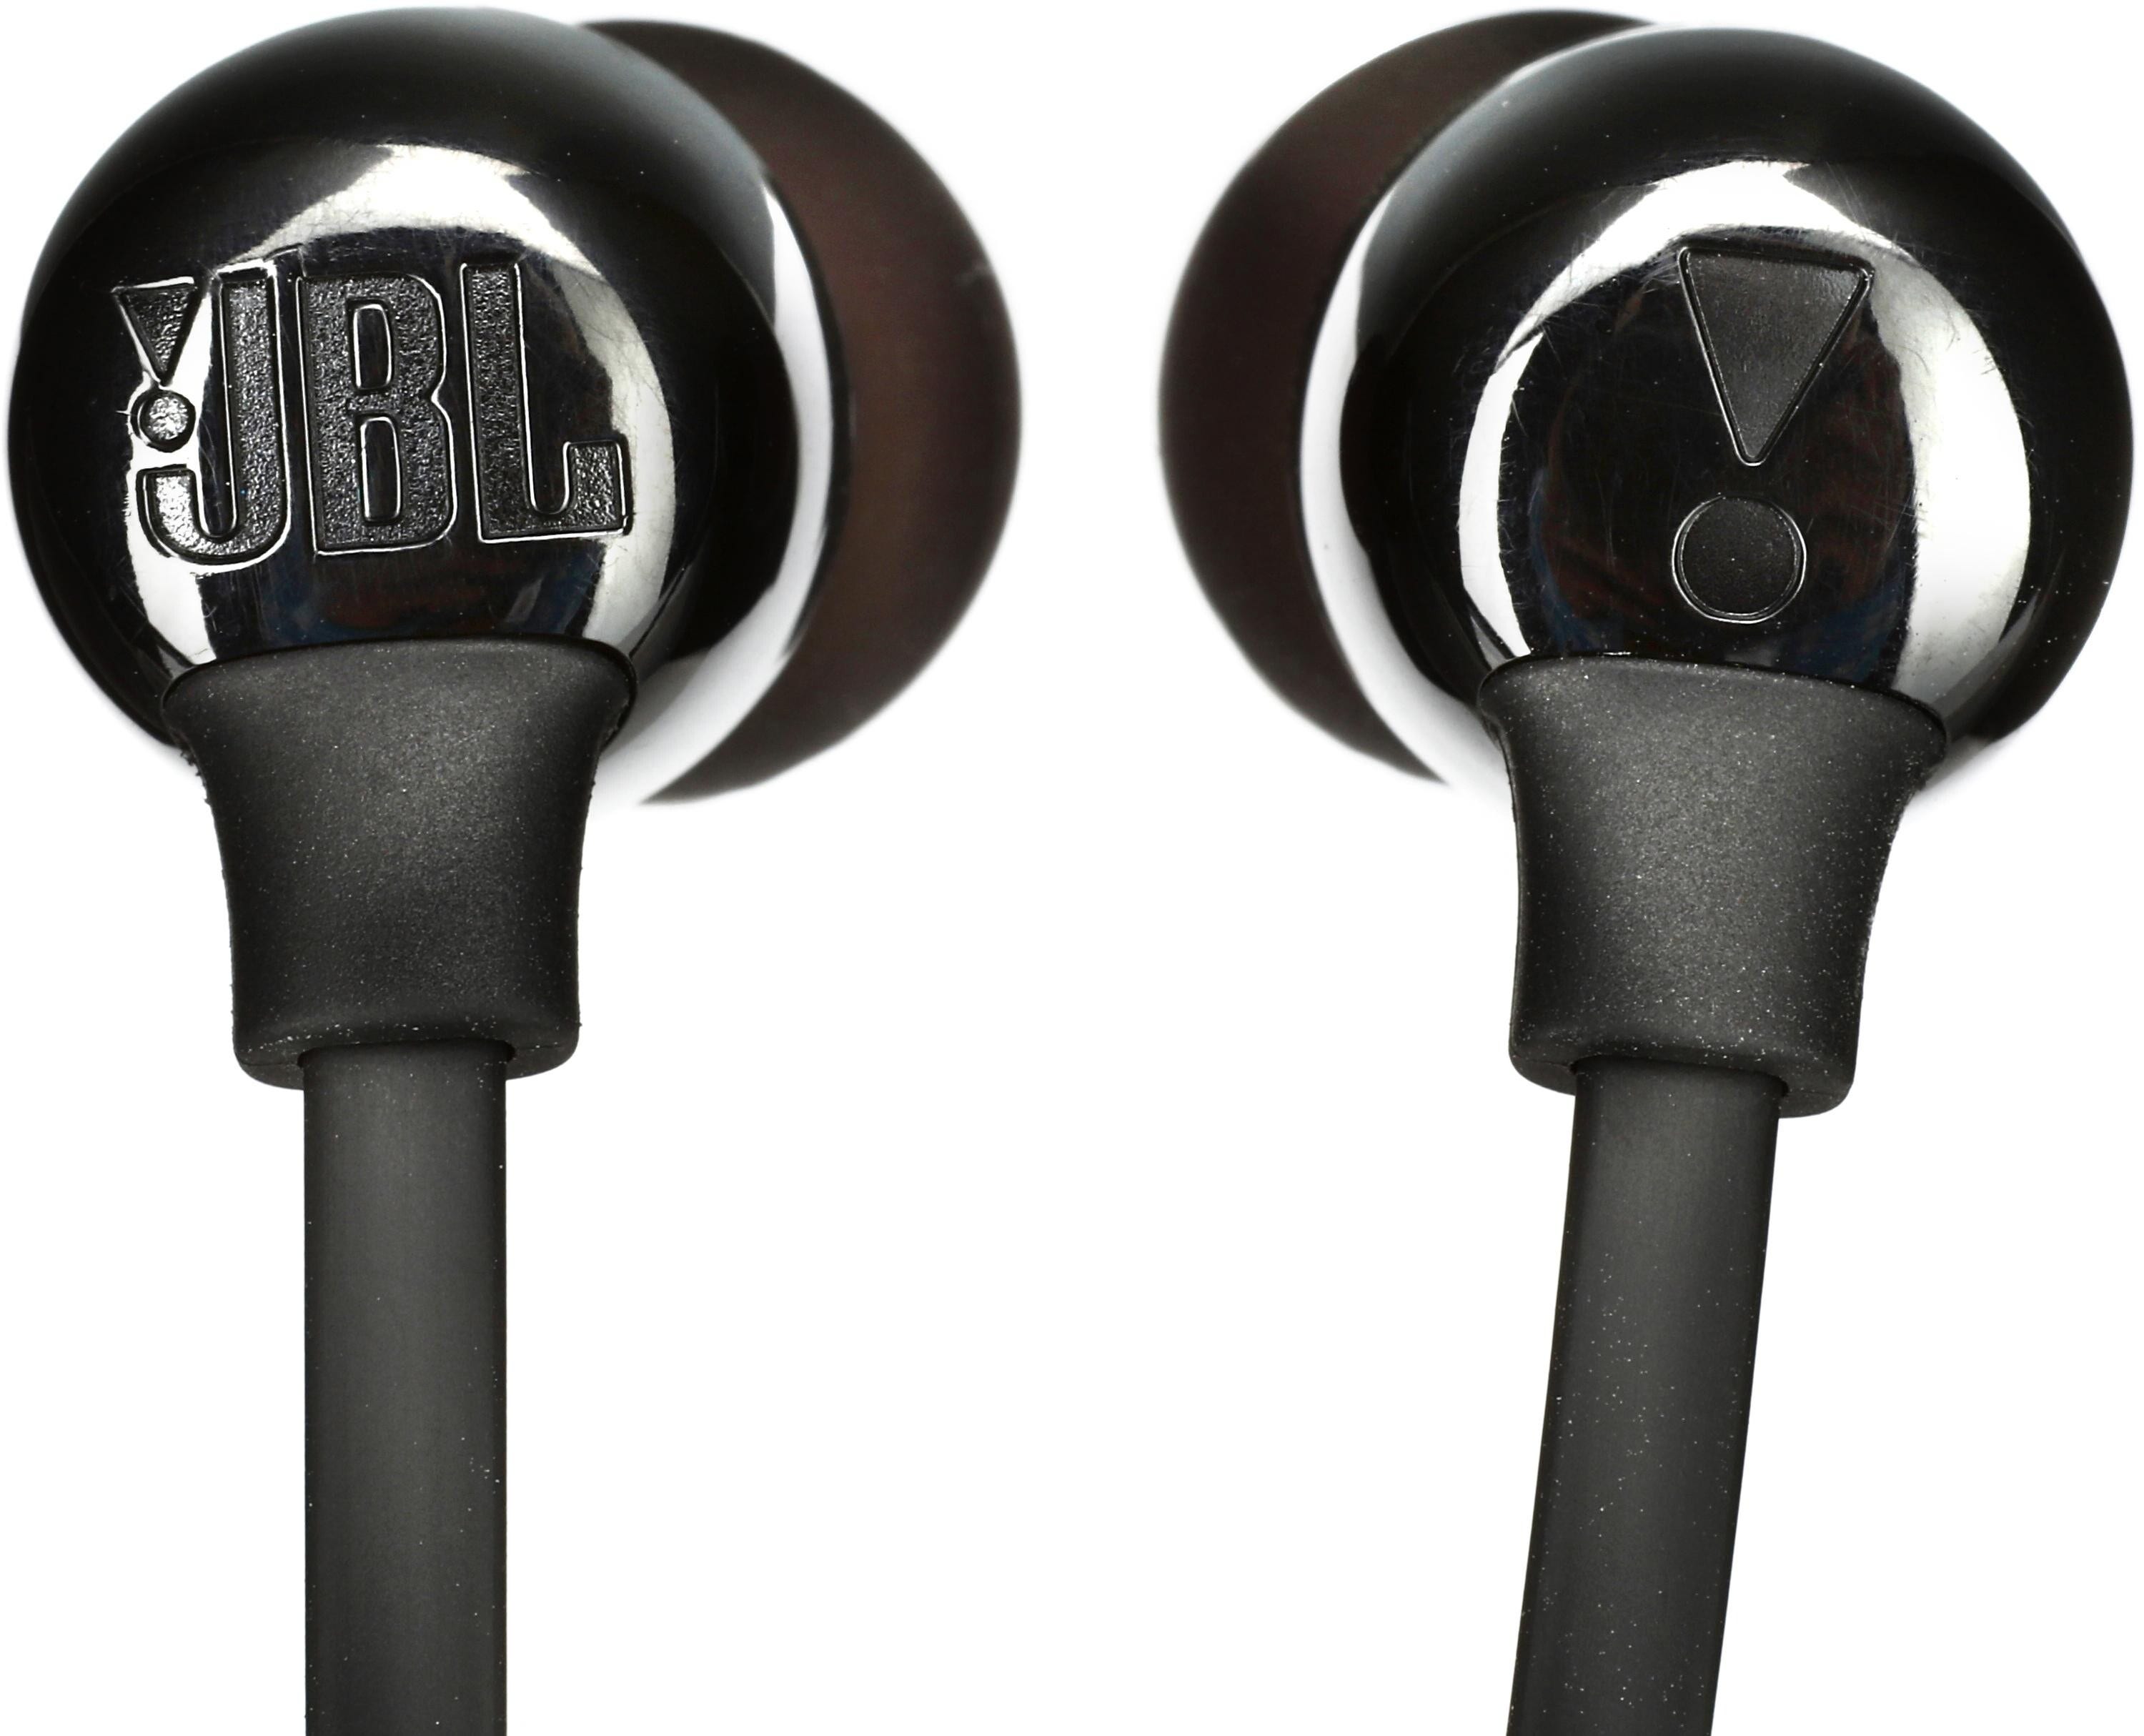 JBL TUNE 125BT Earphones with mic in ear Bluetooth wireless black - Office  Depot